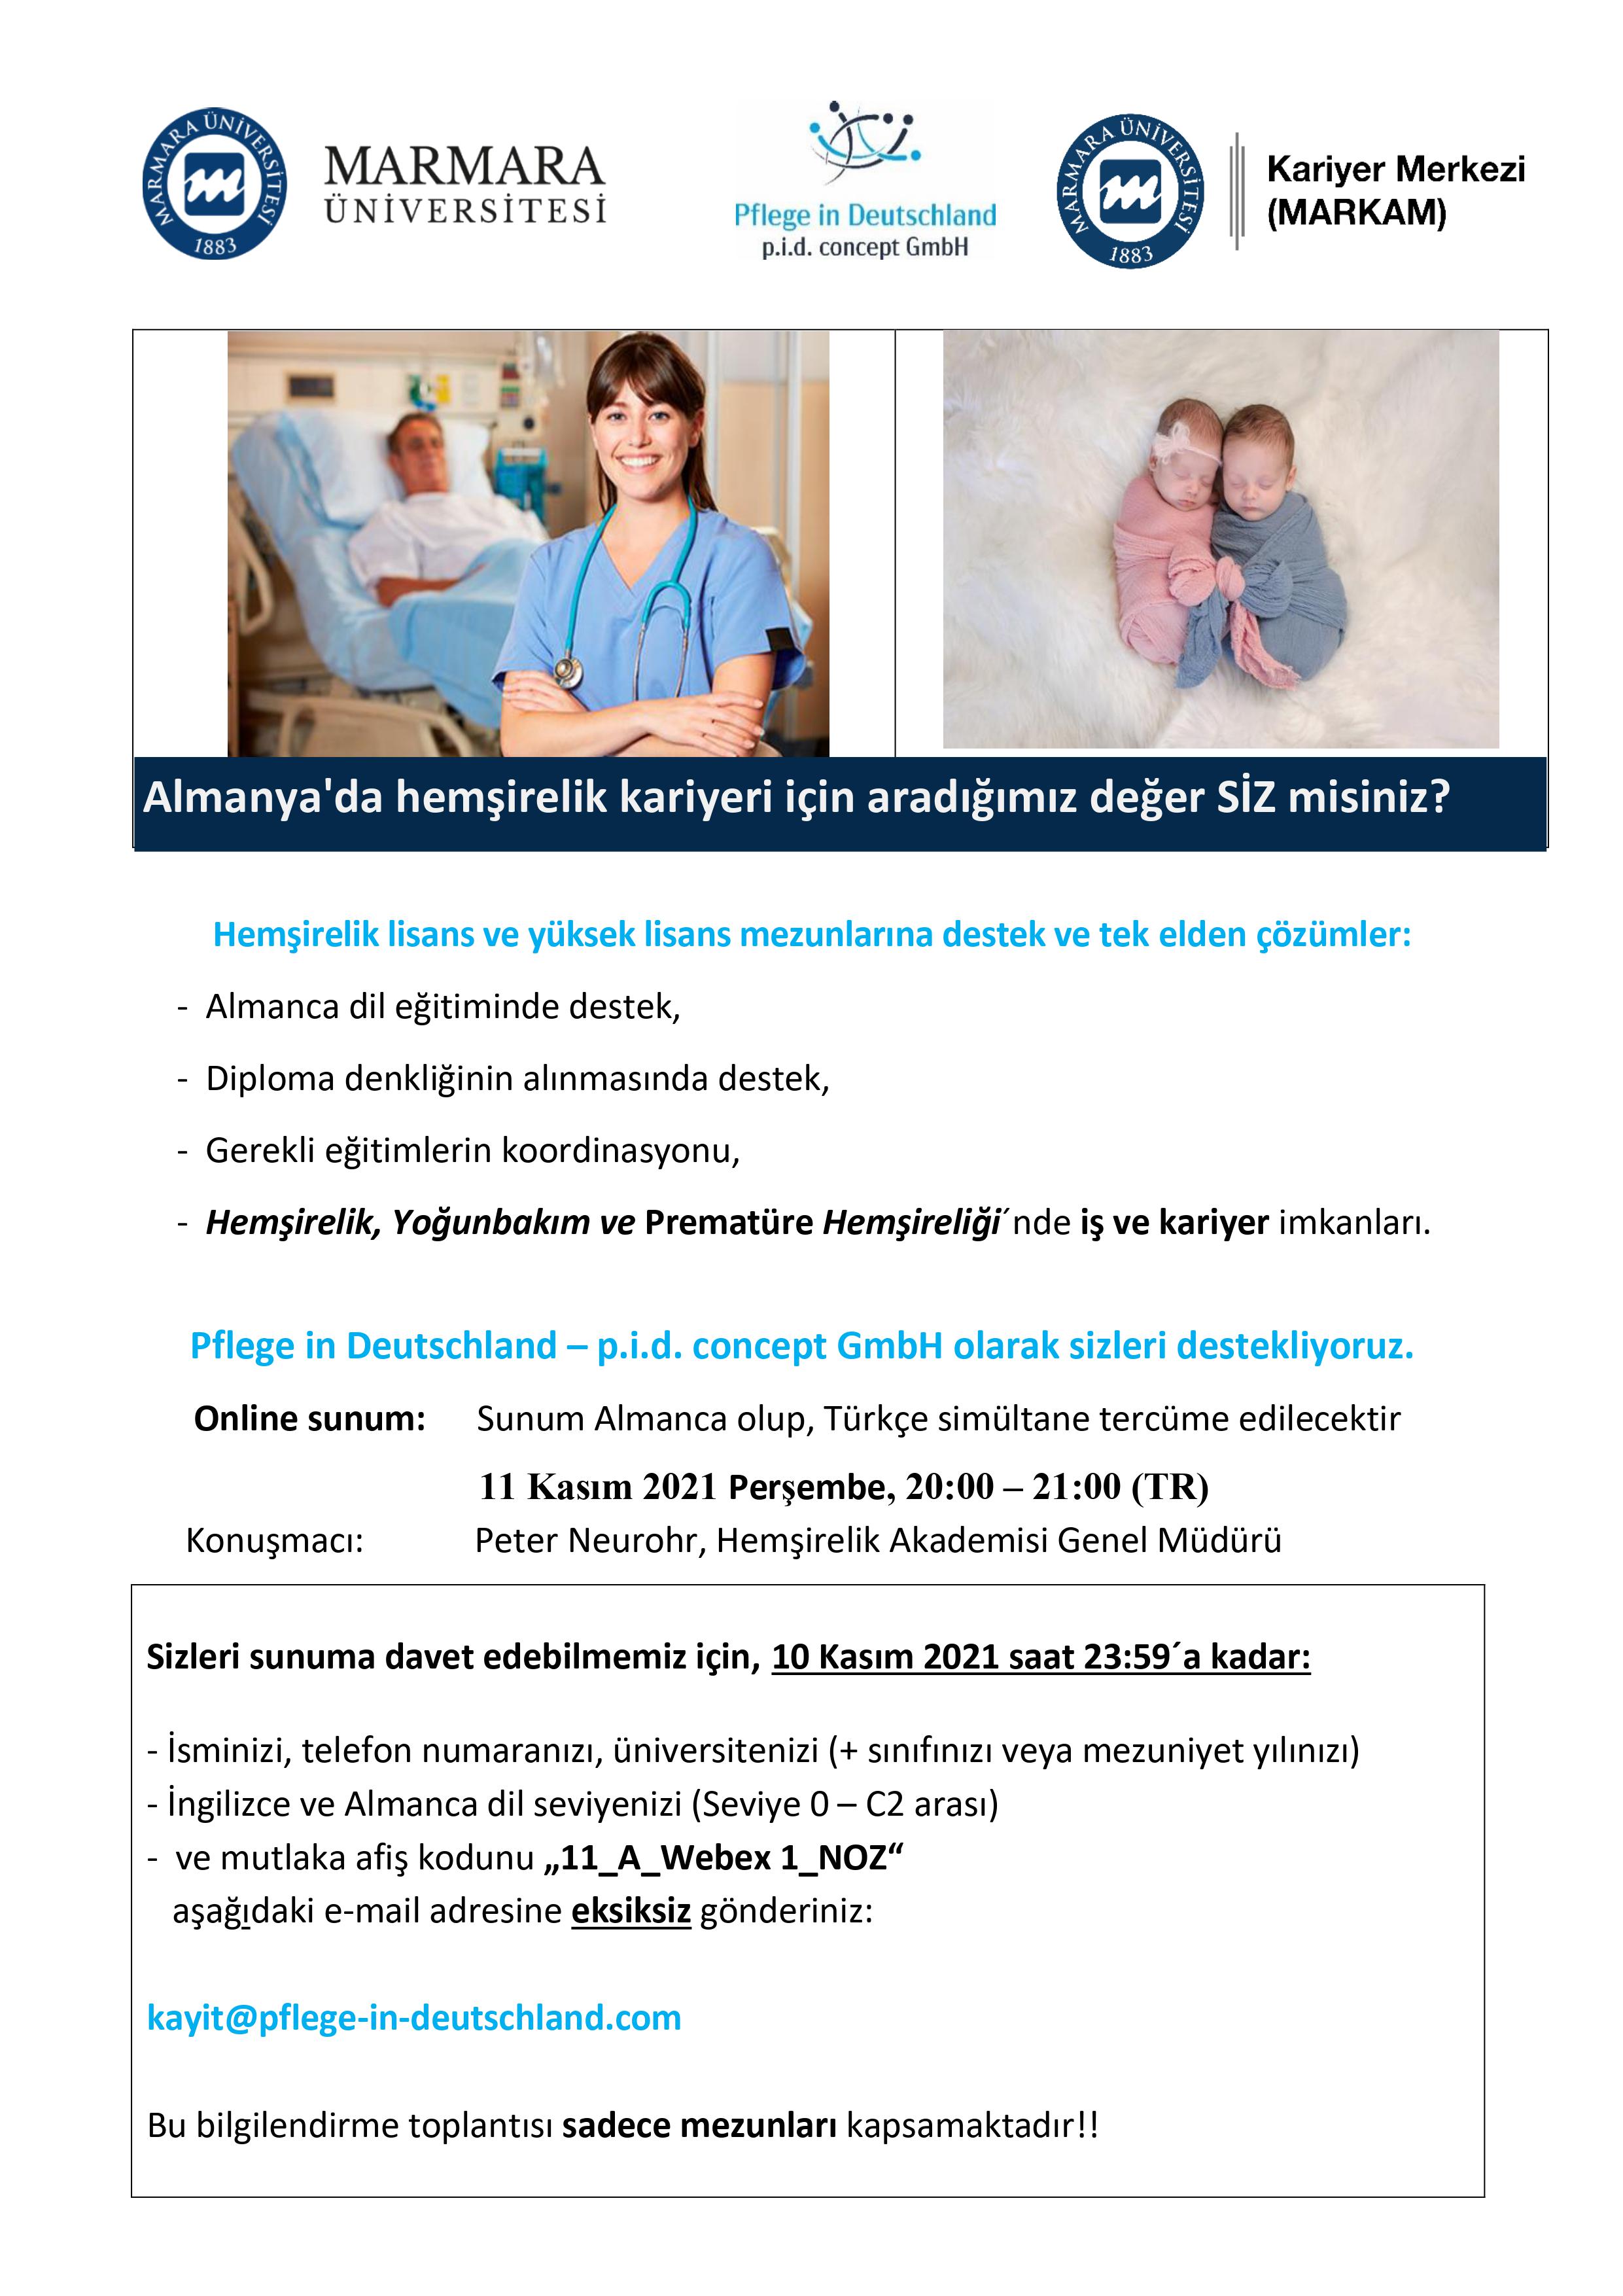 Almanya'da Hemşirelik Kariyeri İçin Aradığımız Değer Siz Misiniz 11.11.2021.jpg (609 KB)